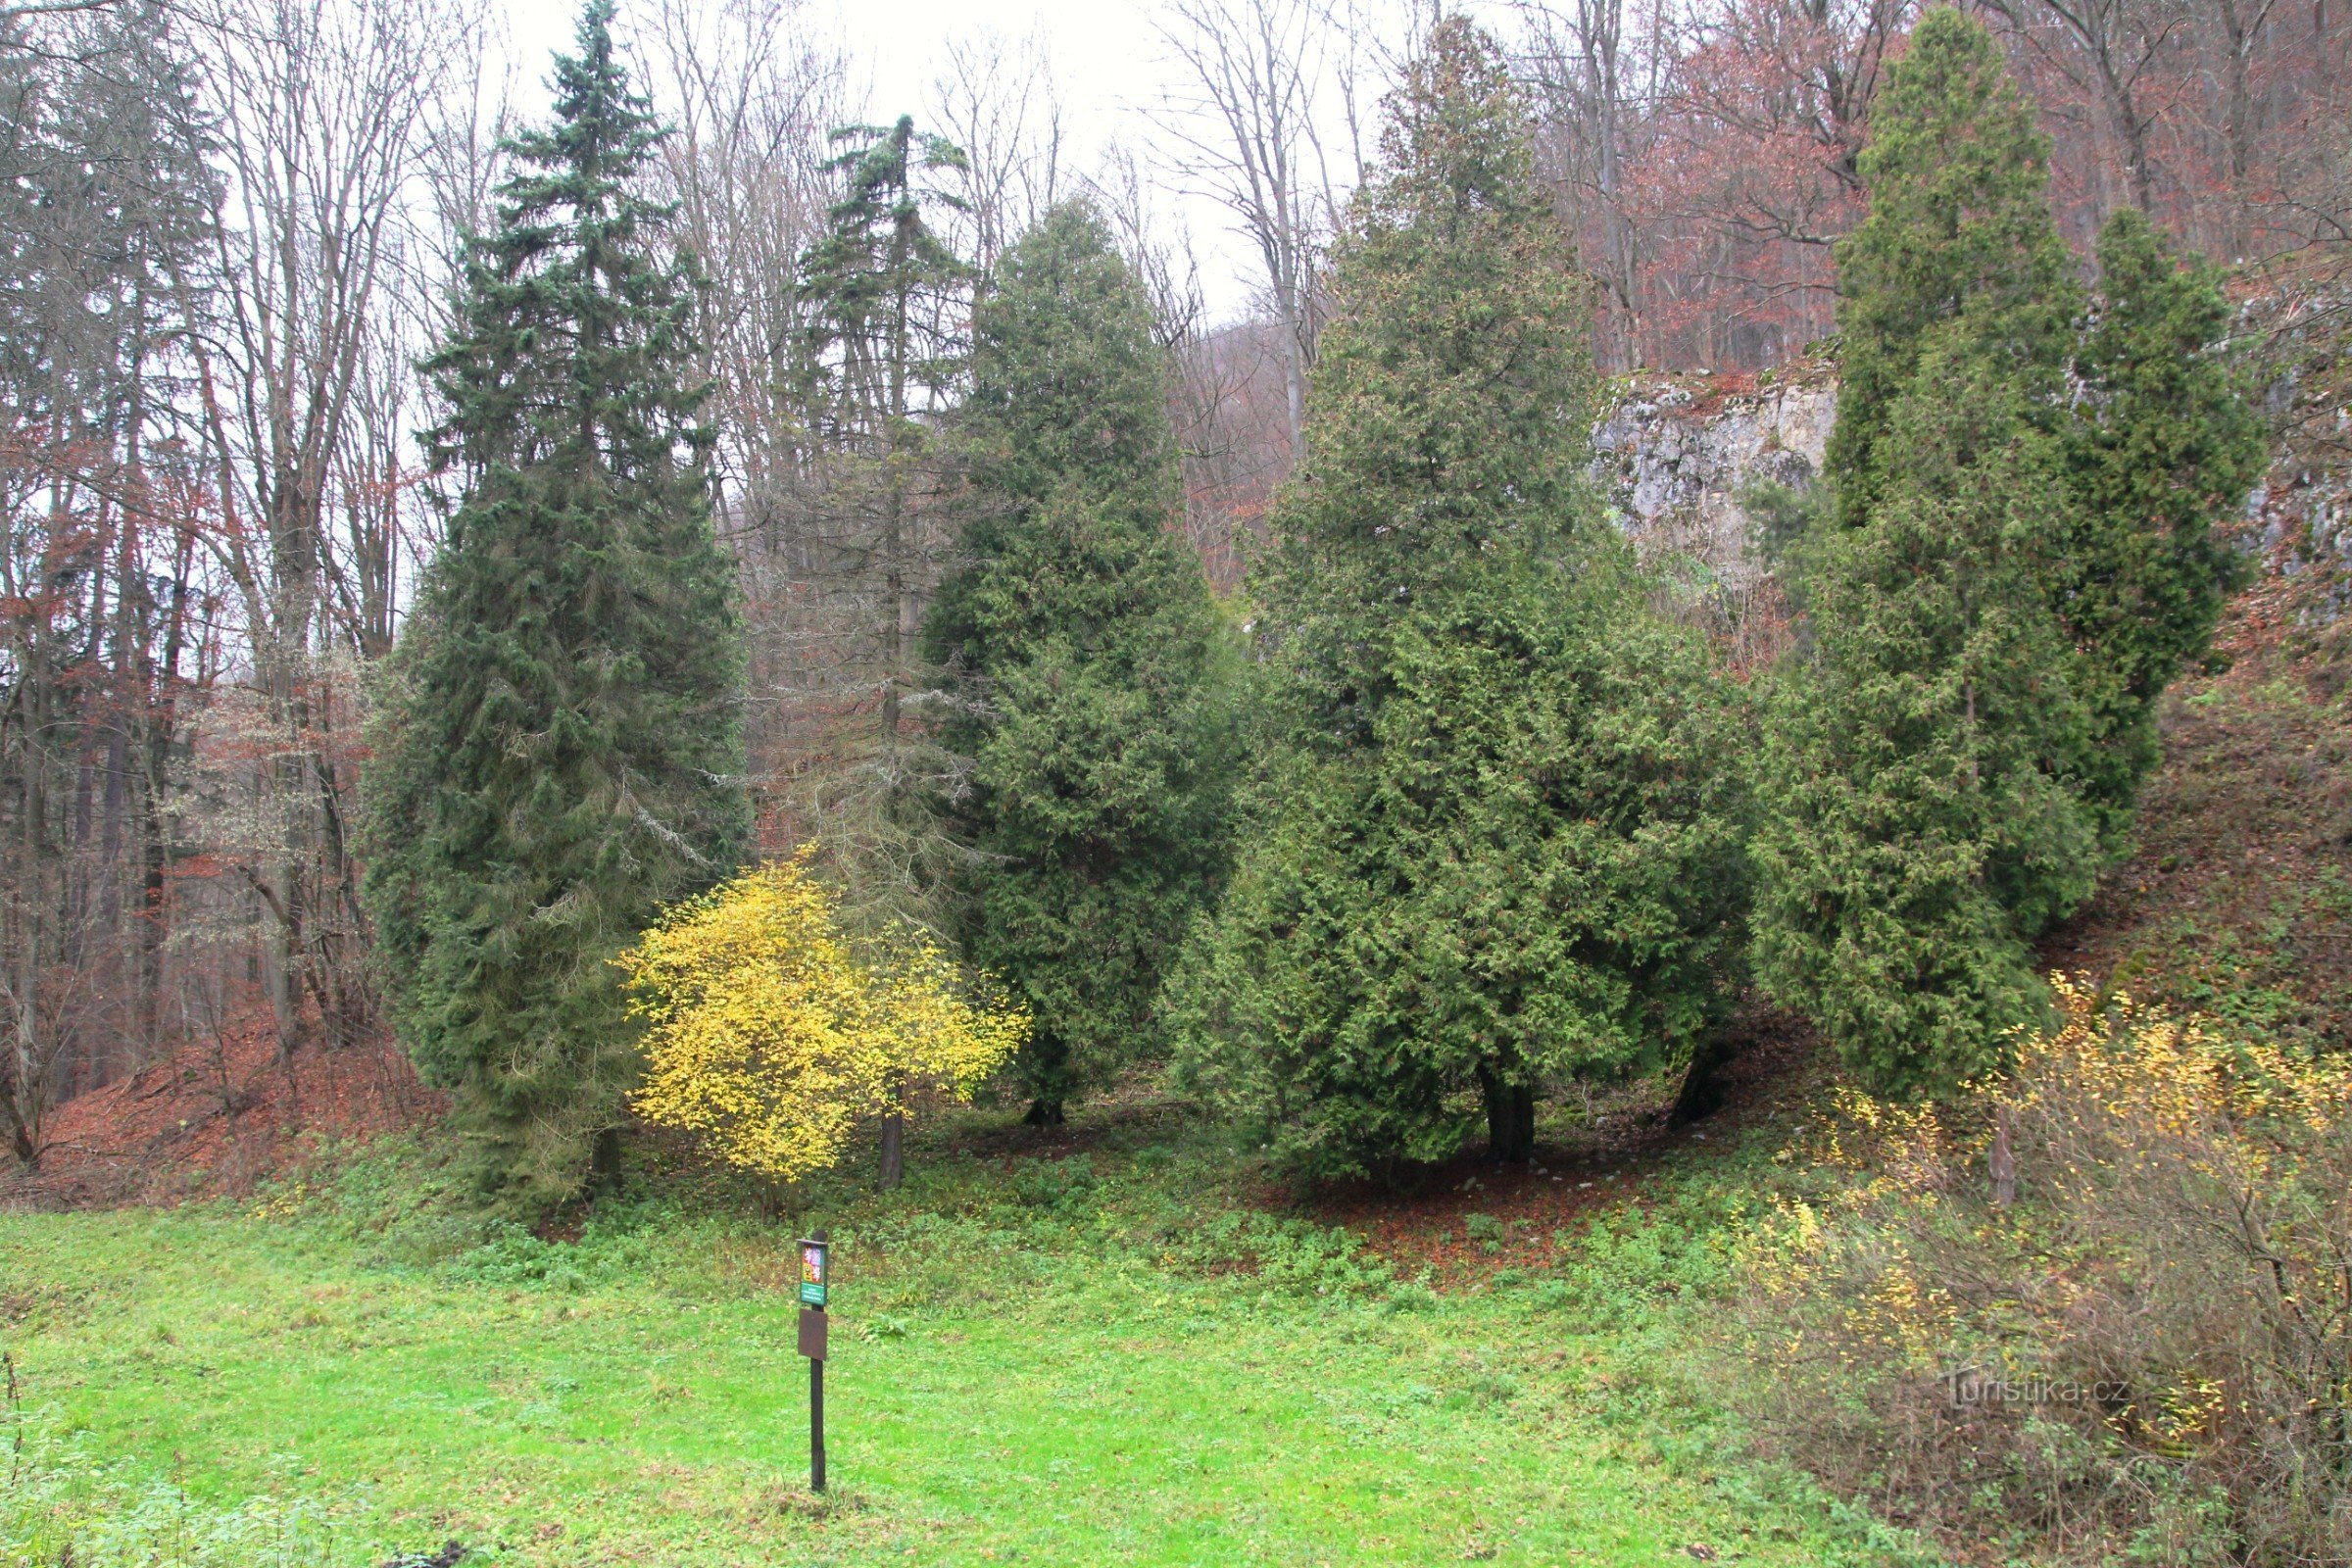 Καλλωπιστικά δέντρα στους πρόποδες της κοιλάδας Padouch κάτω από το μνημείο česka